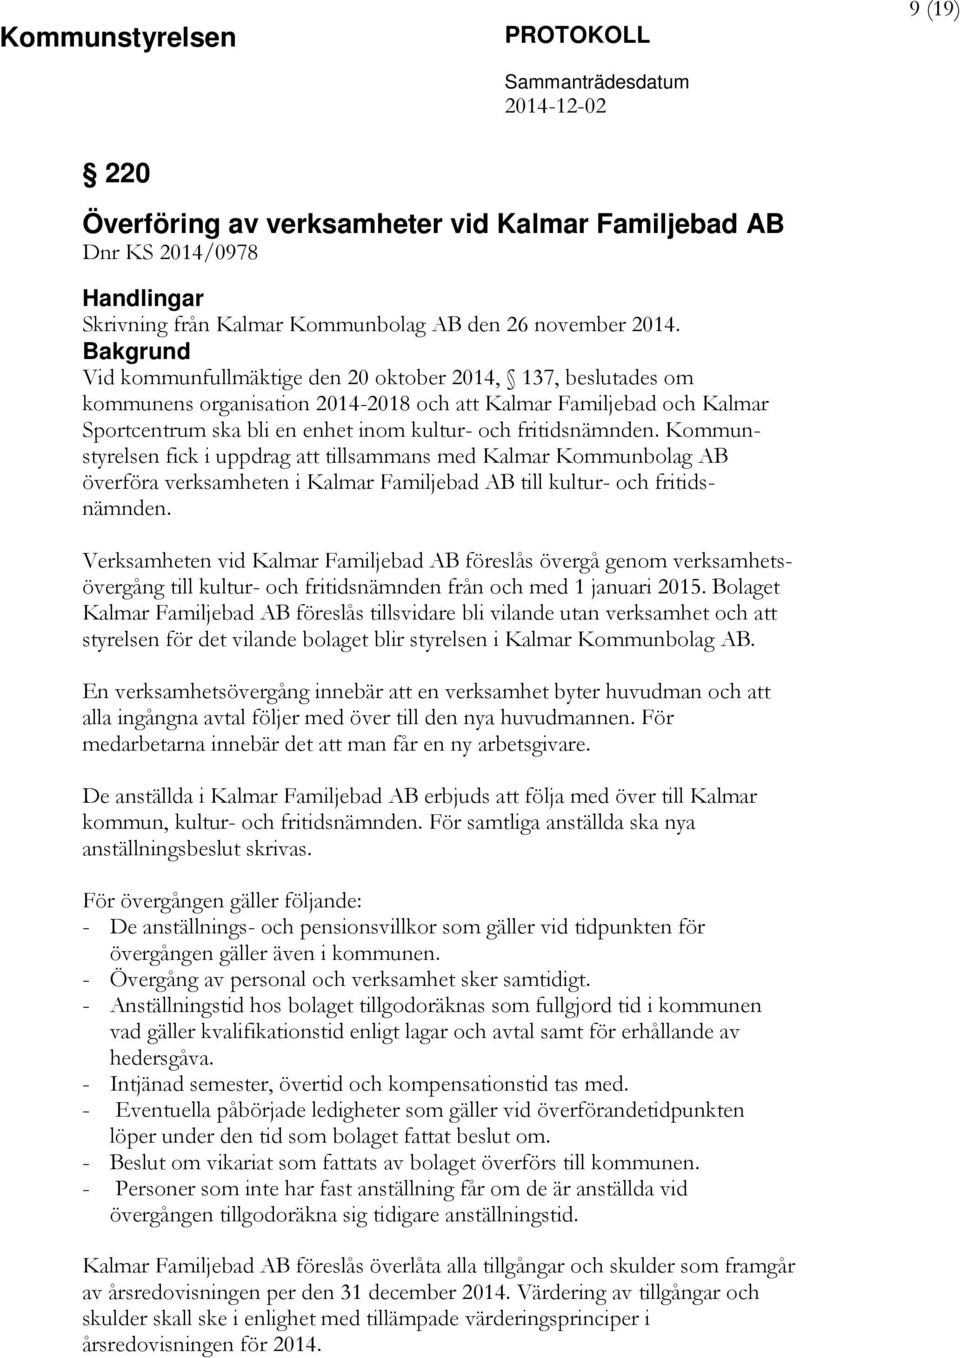 Kommunstyrelsen fick i uppdrag att tillsammans med Kalmar Kommunbolag AB överföra verksamheten i Kalmar Familjebad AB till kultur- och fritidsnämnden.